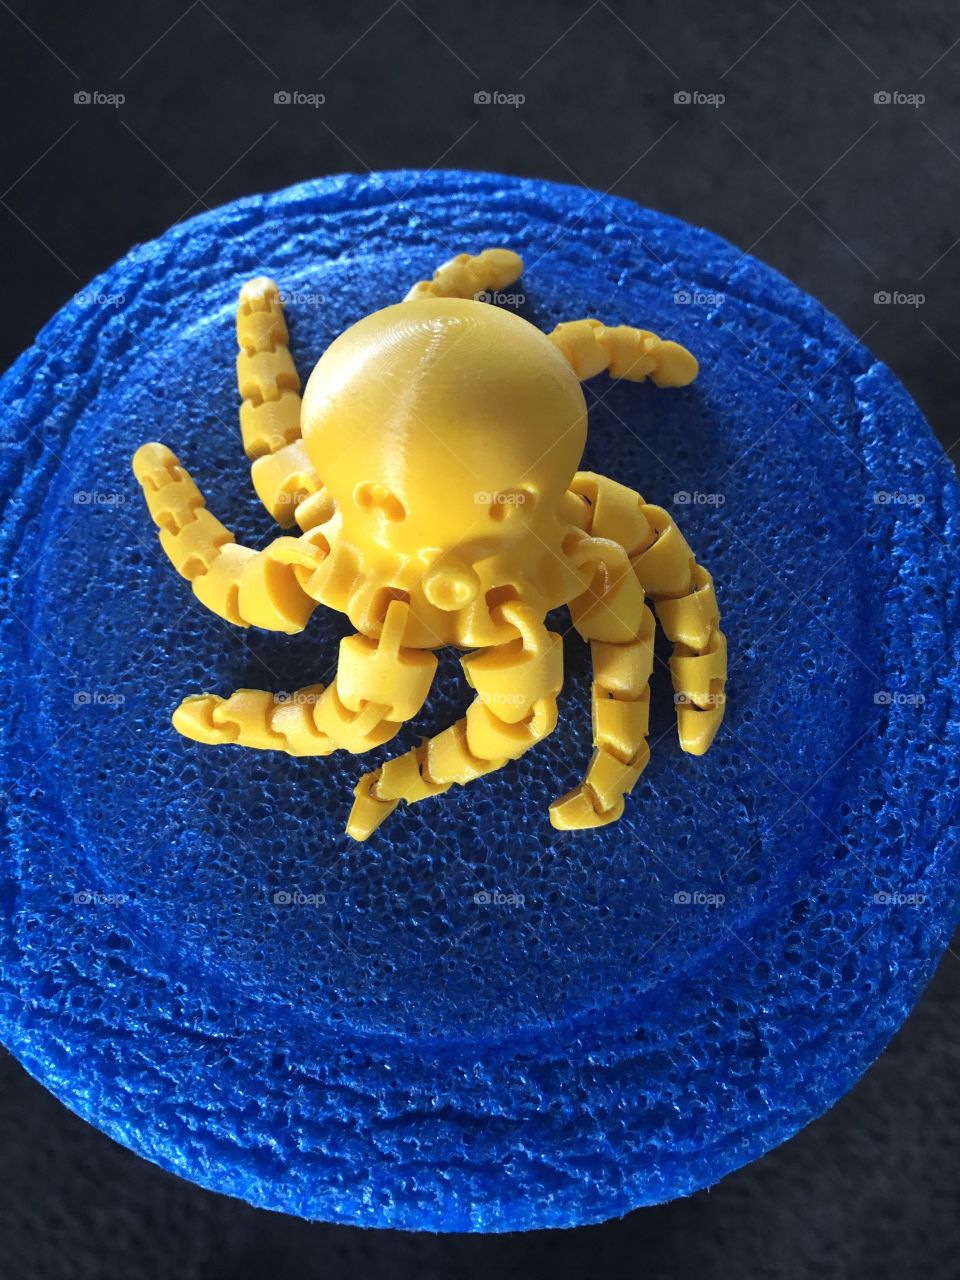 3D printed Octopus artwork